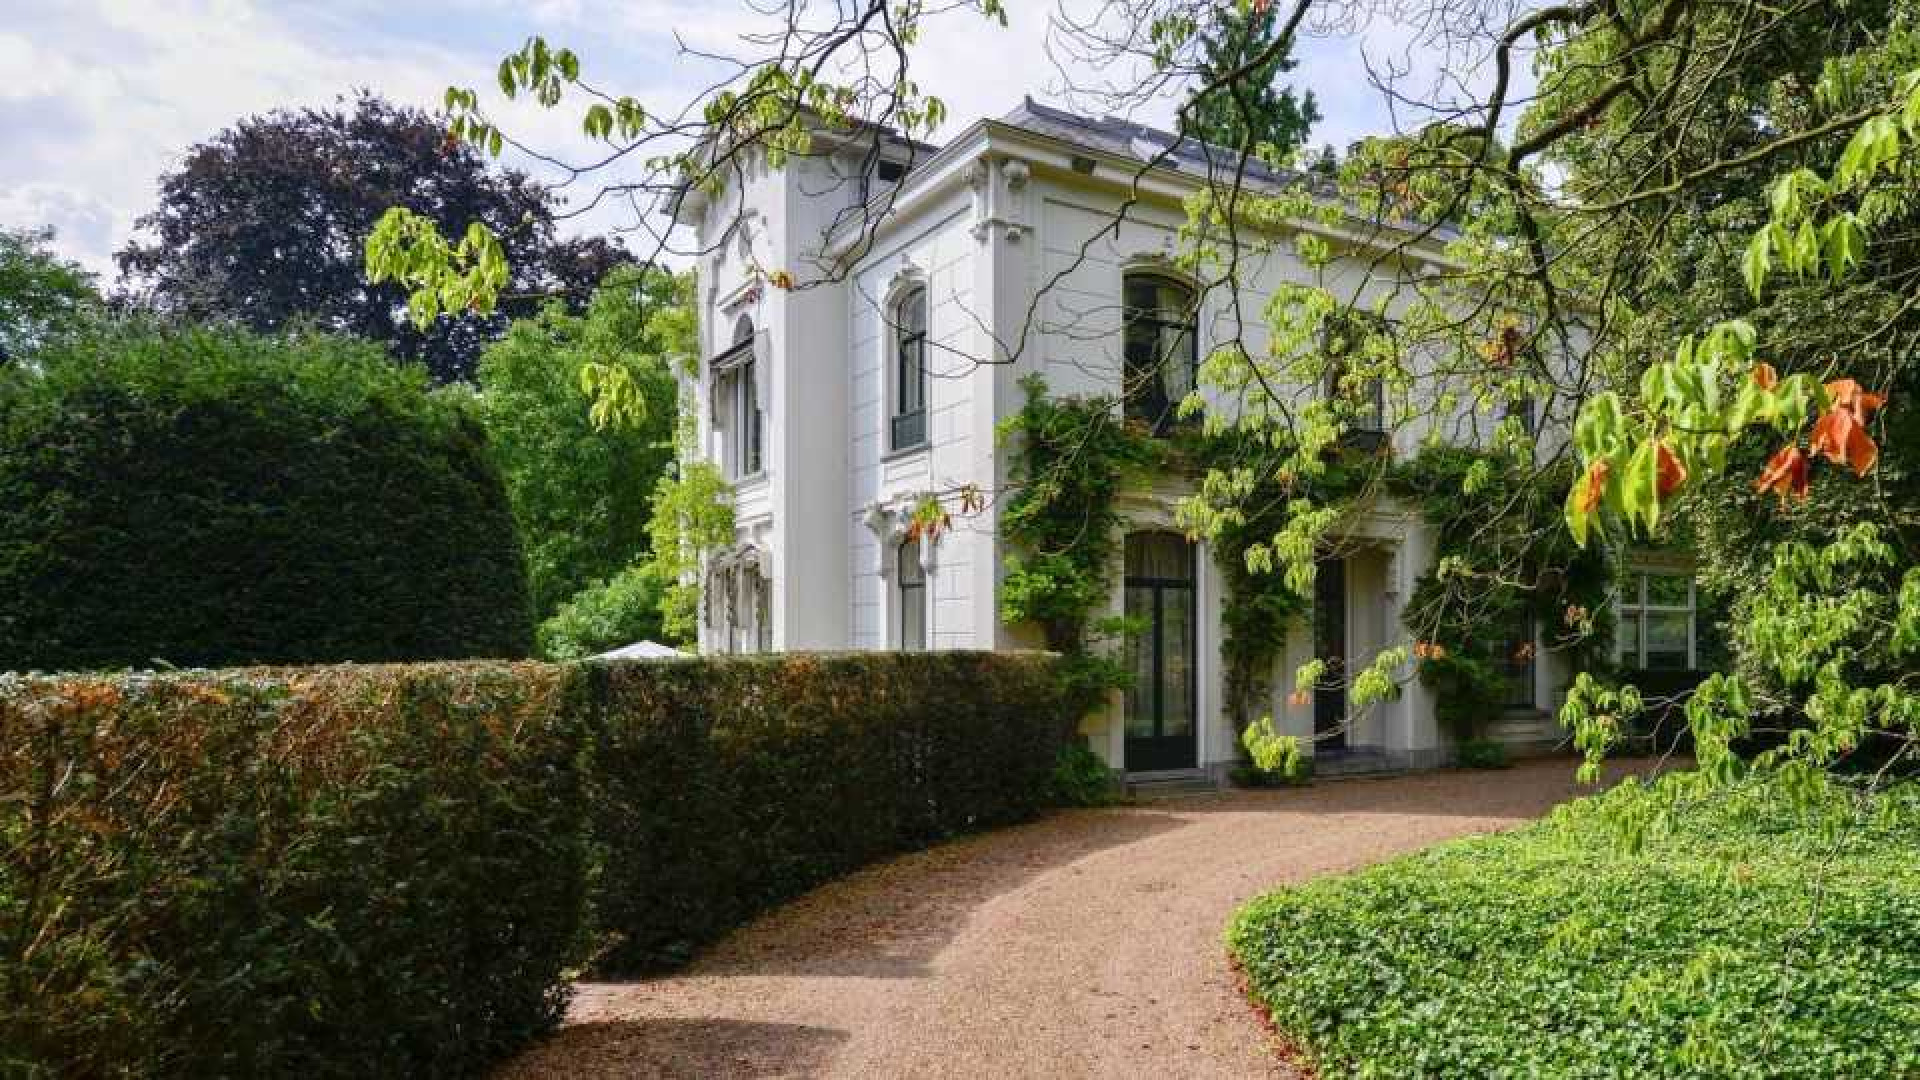 Prinses Irene verkoopt haar landhuis in Wijk bij Duurstede. Zie foto's 1